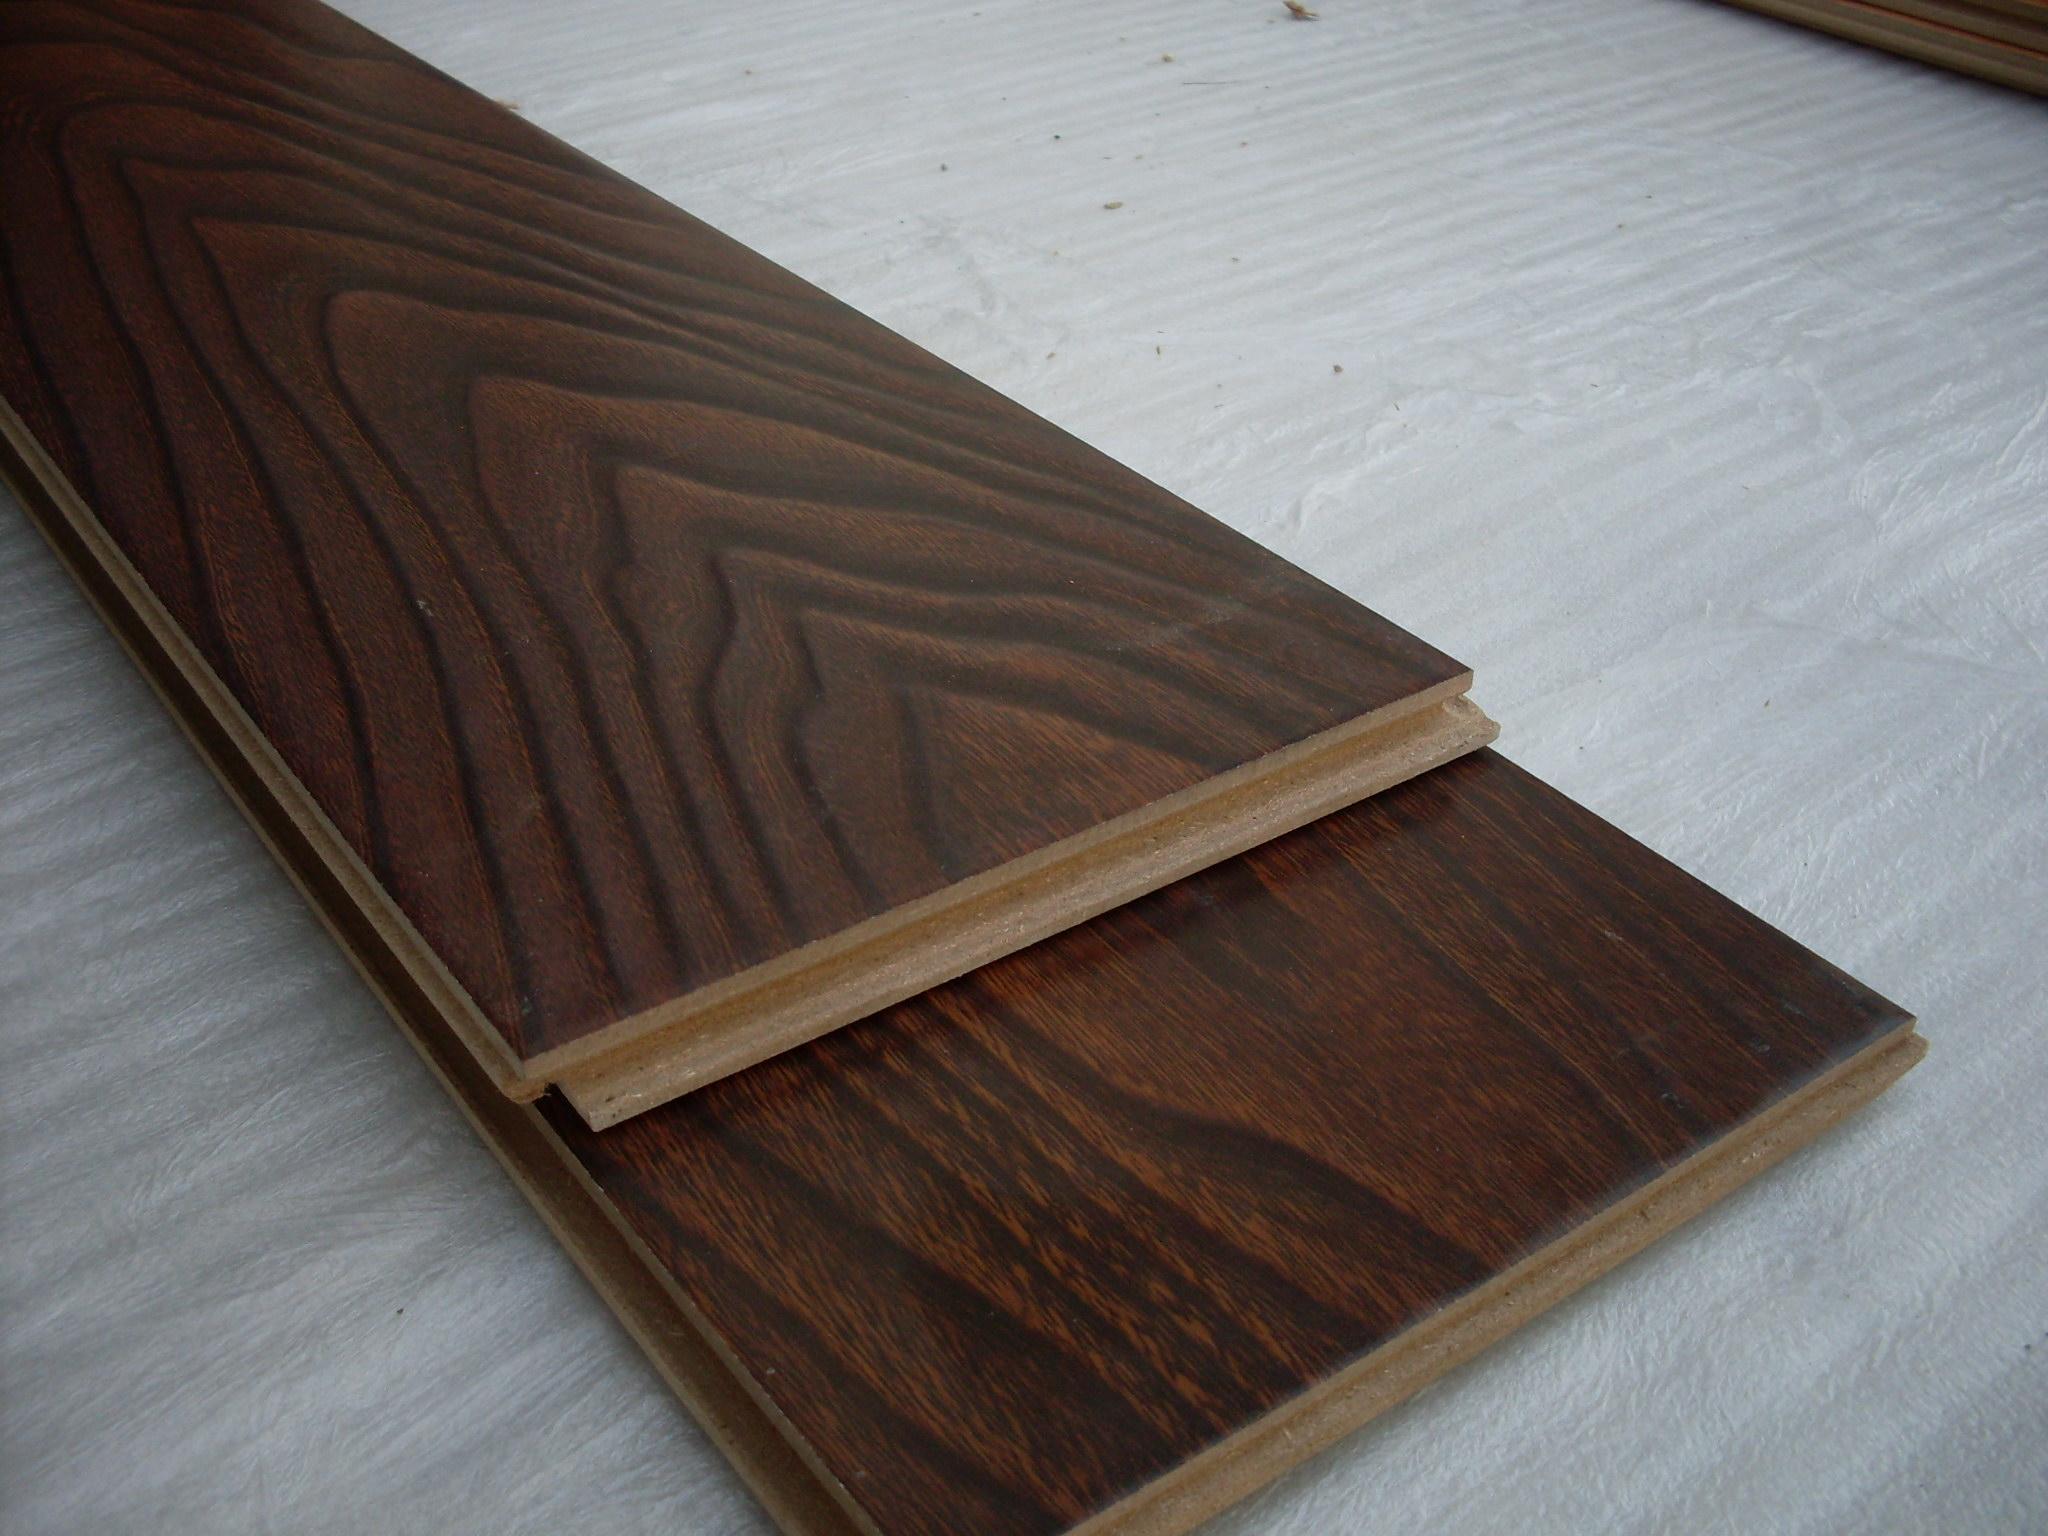 强化地板是复合木地板吗 强化地板表层是纸做的吗